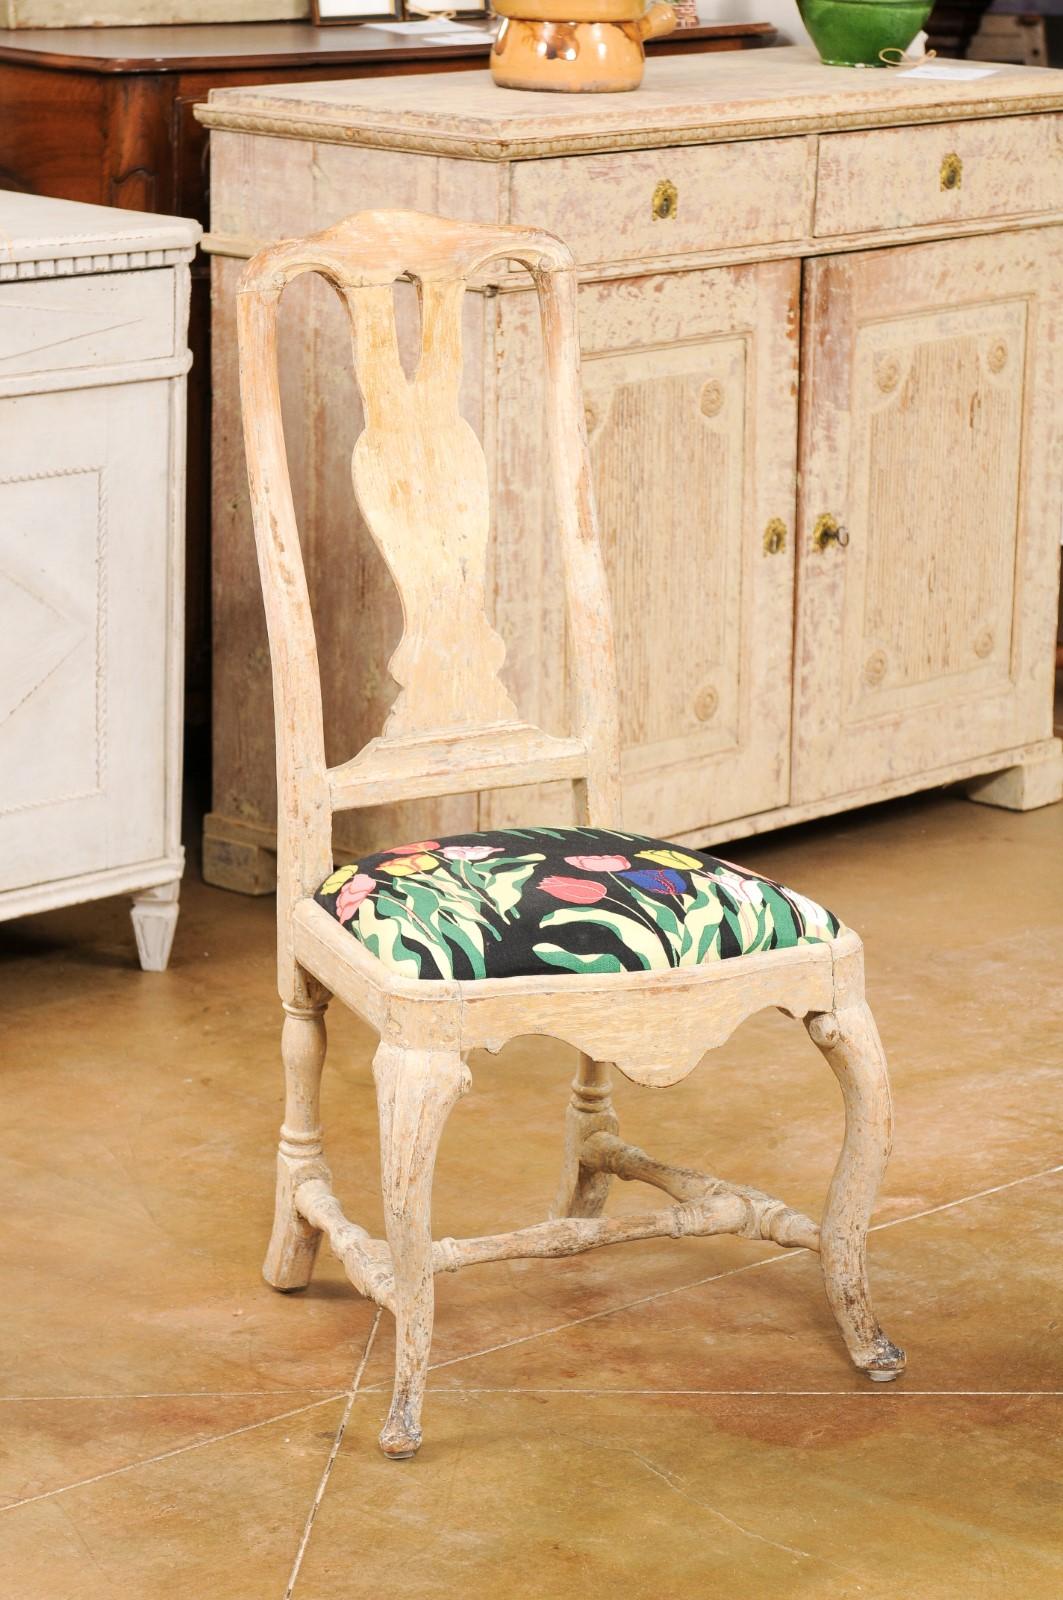 Paire de chaises suédoises d'époque rococo en bois peint, datant du XVIIIe siècle, avec éclisses sculptées, pieds cabriole, traverses en forme de H, tapisserie florale et patine vieillie. Créée en Suède au XVIIIe siècle, cette paire de chaises